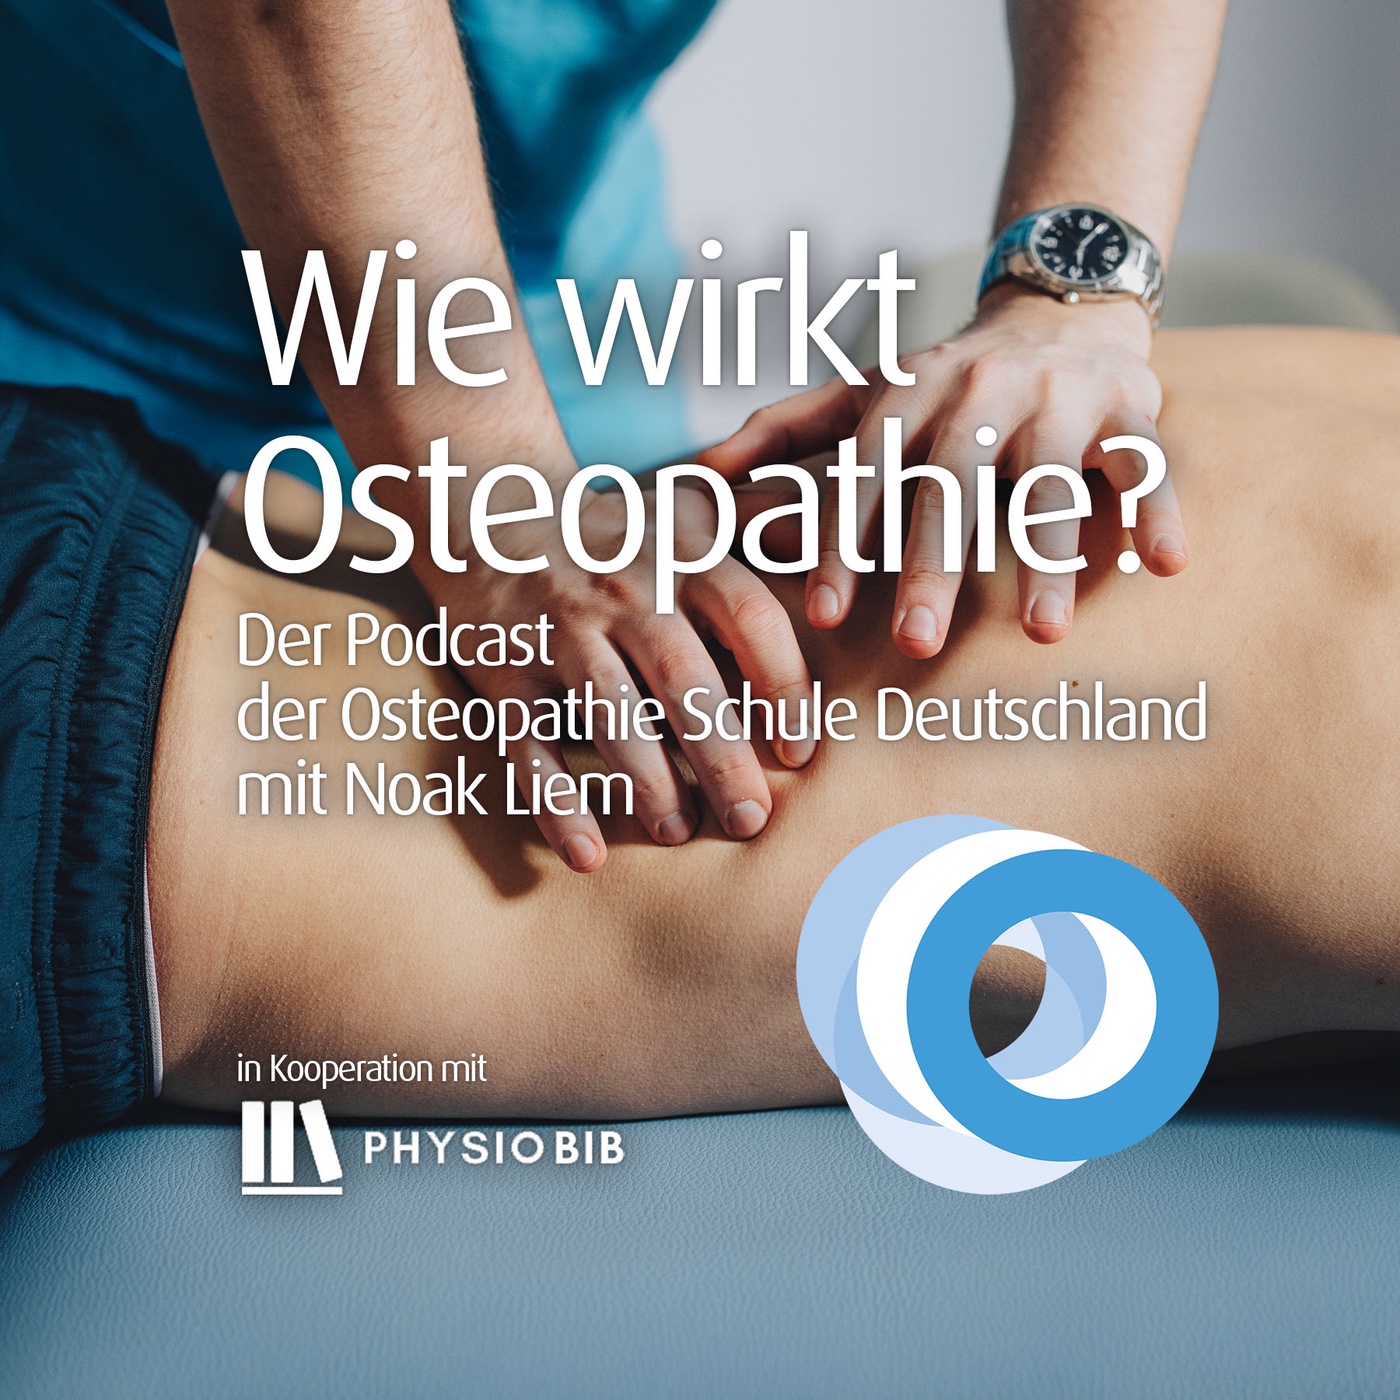 #06 - Morphogenetische Felder und die potentielle Relevanz in der Osteopathie